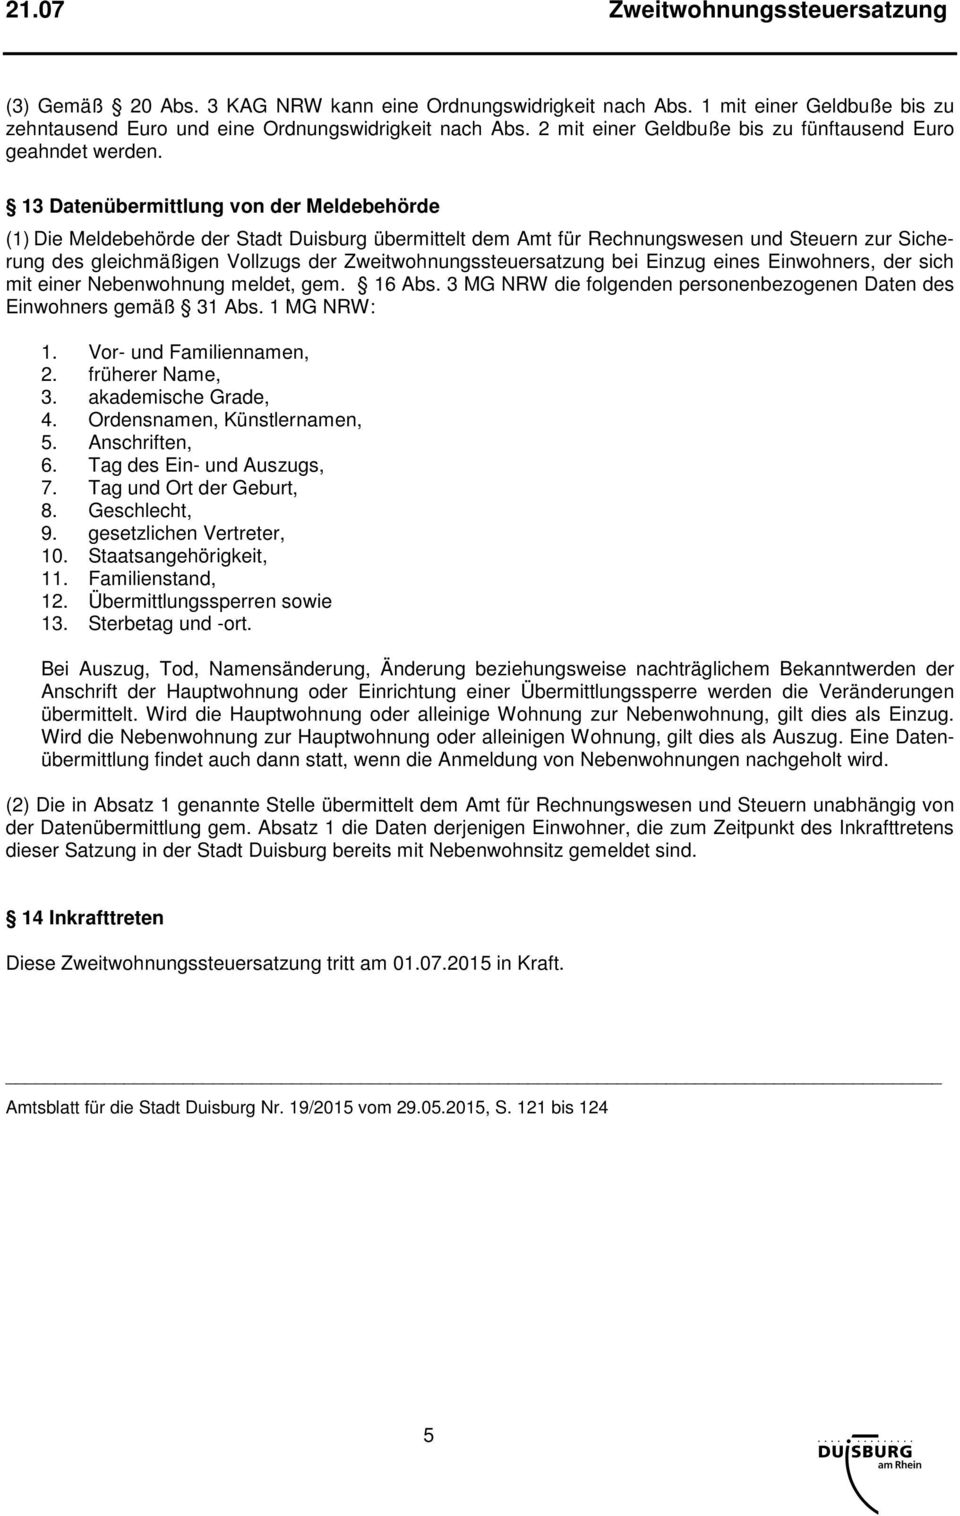 13 Datenübermittlung von der Meldebehörde (1) Die Meldebehörde der Stadt Duisburg übermittelt dem Amt für Rechnungswesen und Steuern zur Sicherung des gleichmäßigen Vollzugs der